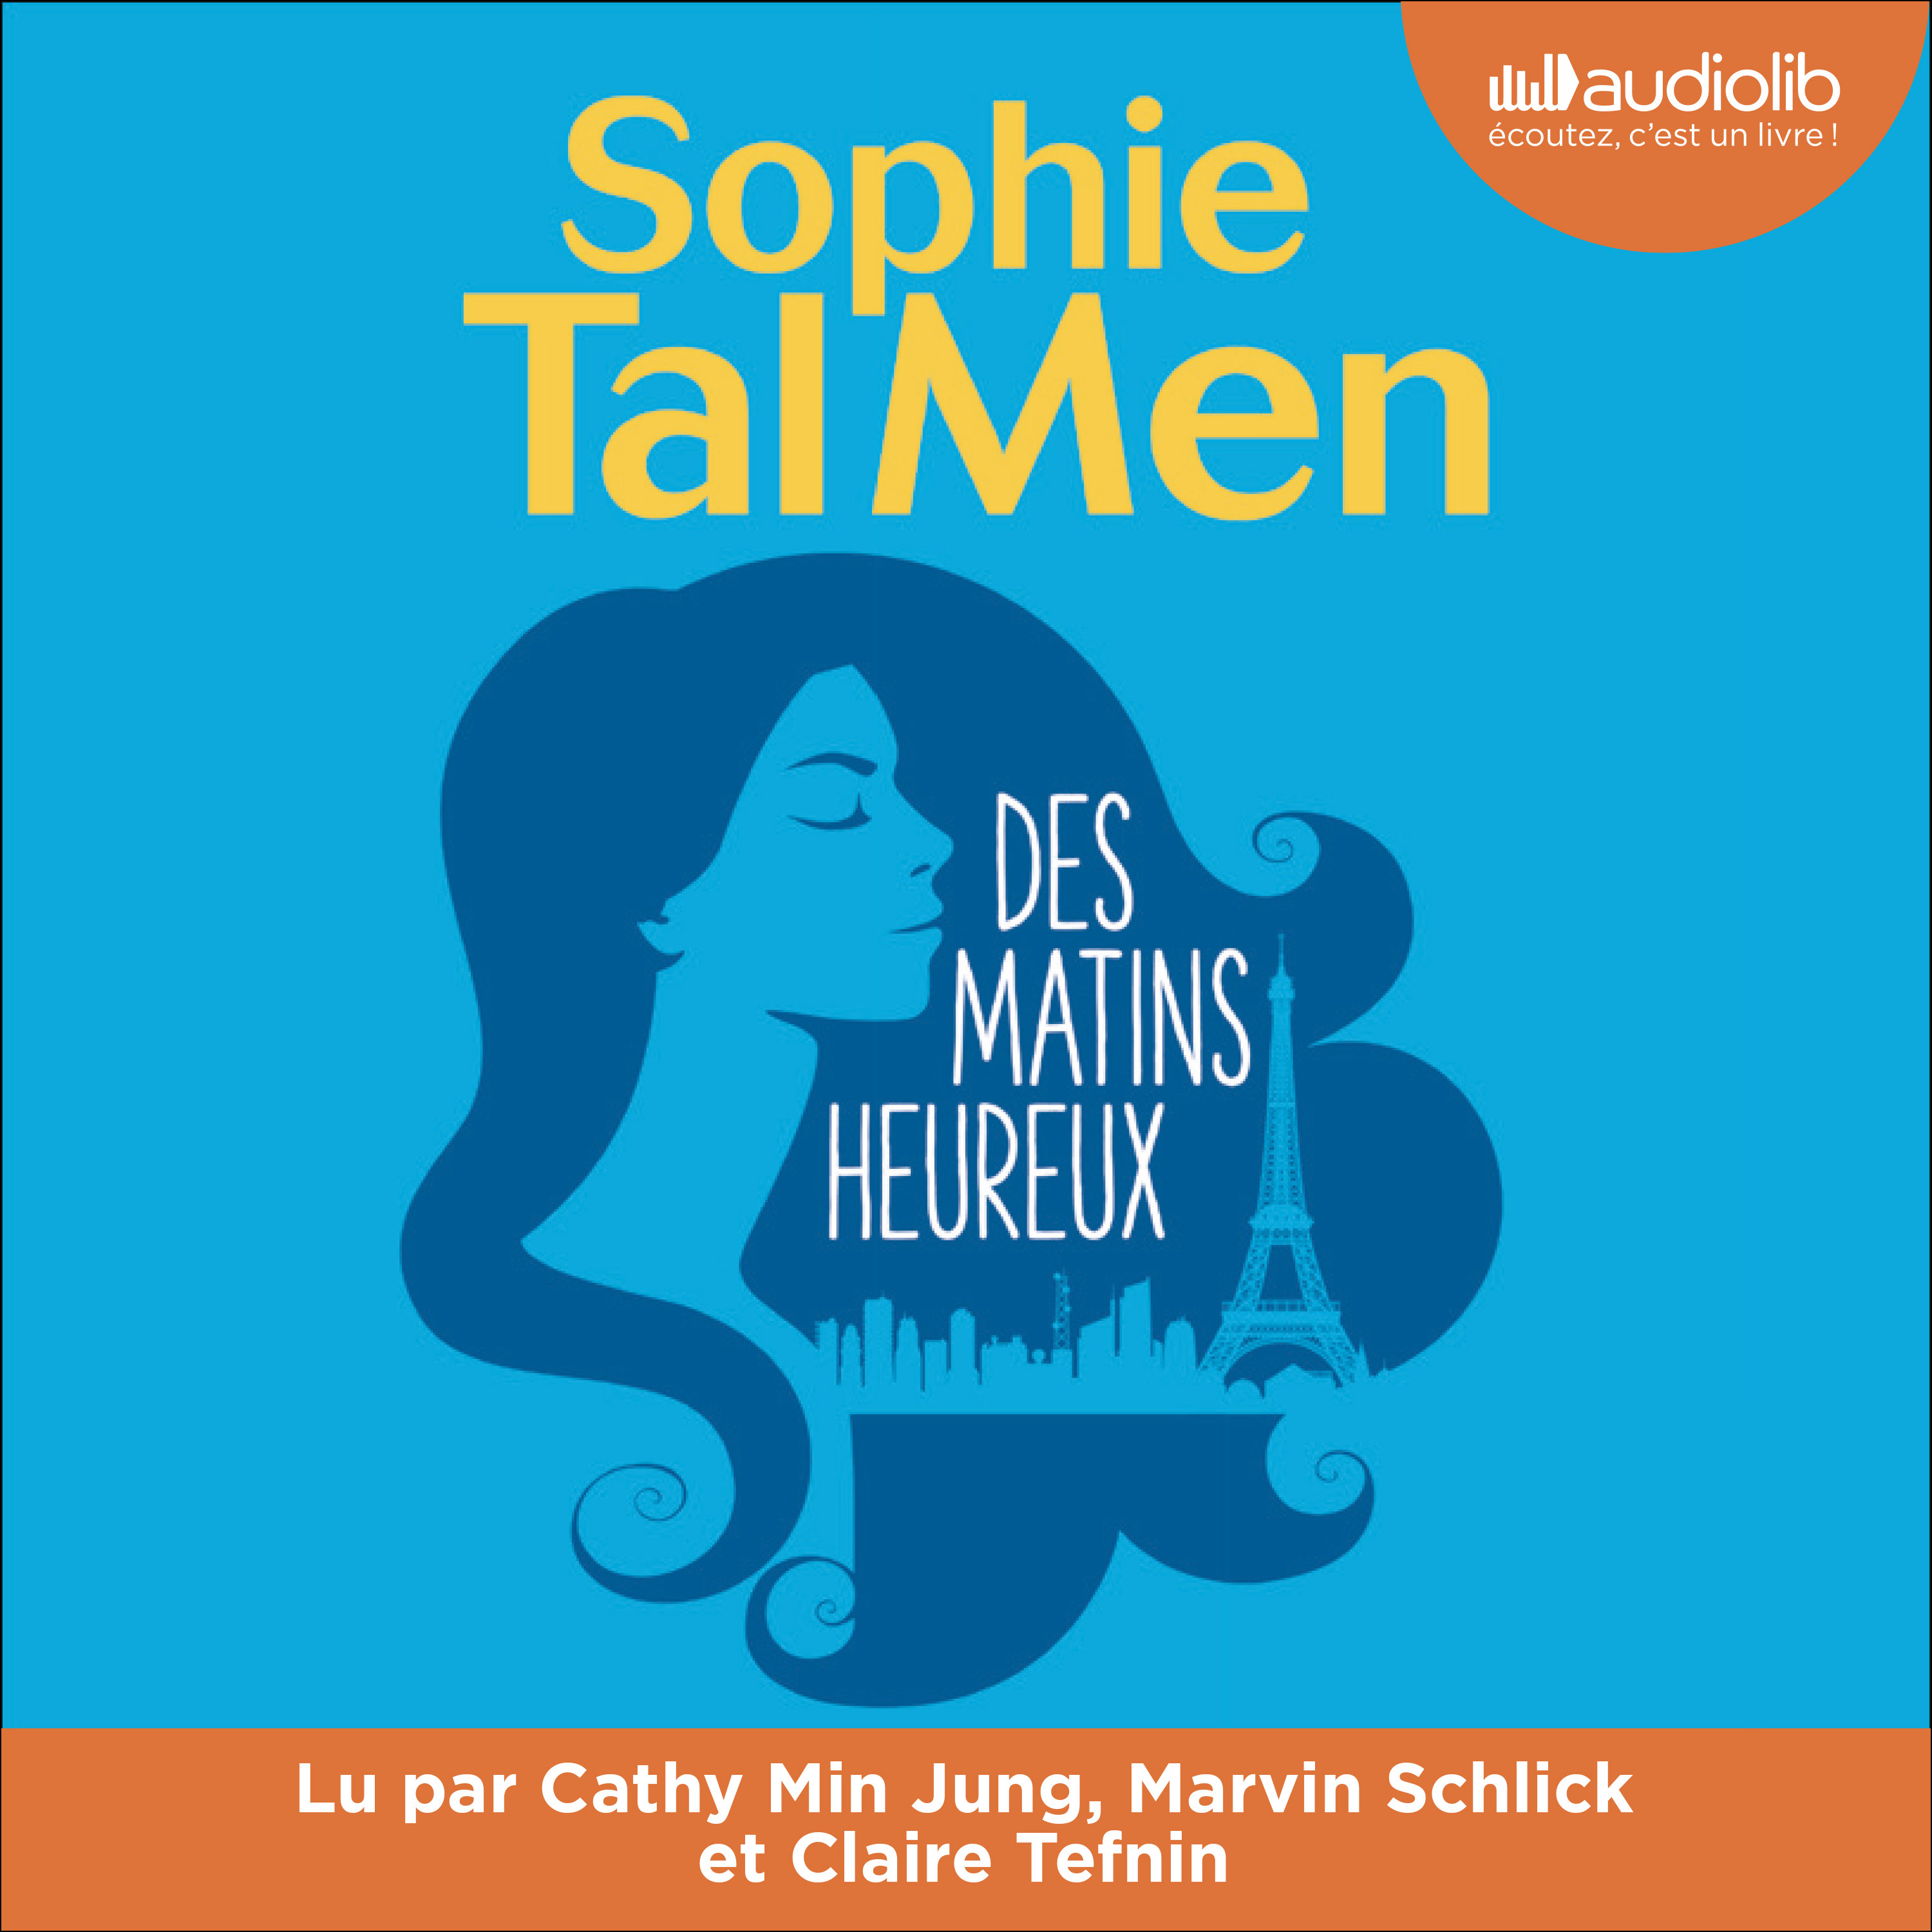 Couverture du livre audio Des matins heureux De Sophie Tal Men 